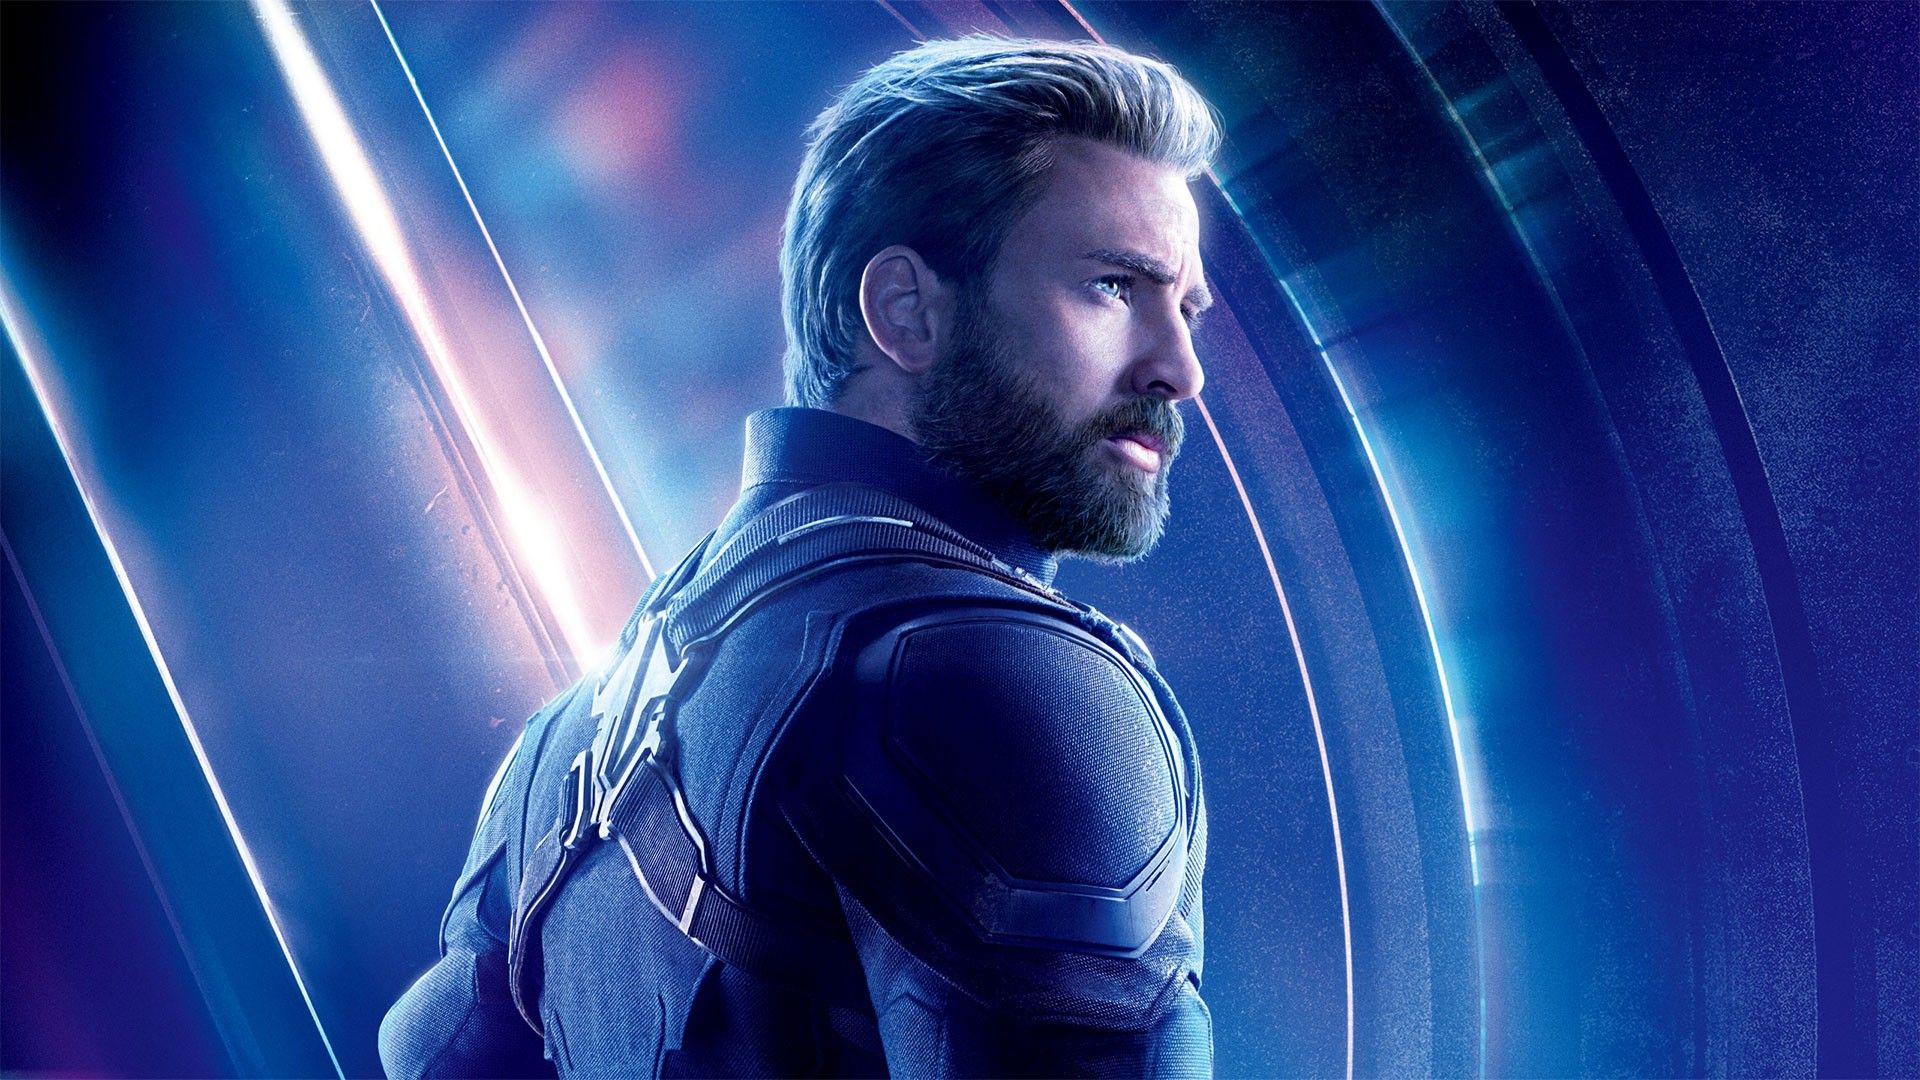 Free download Chris Evans Captain America Avengers Endgame